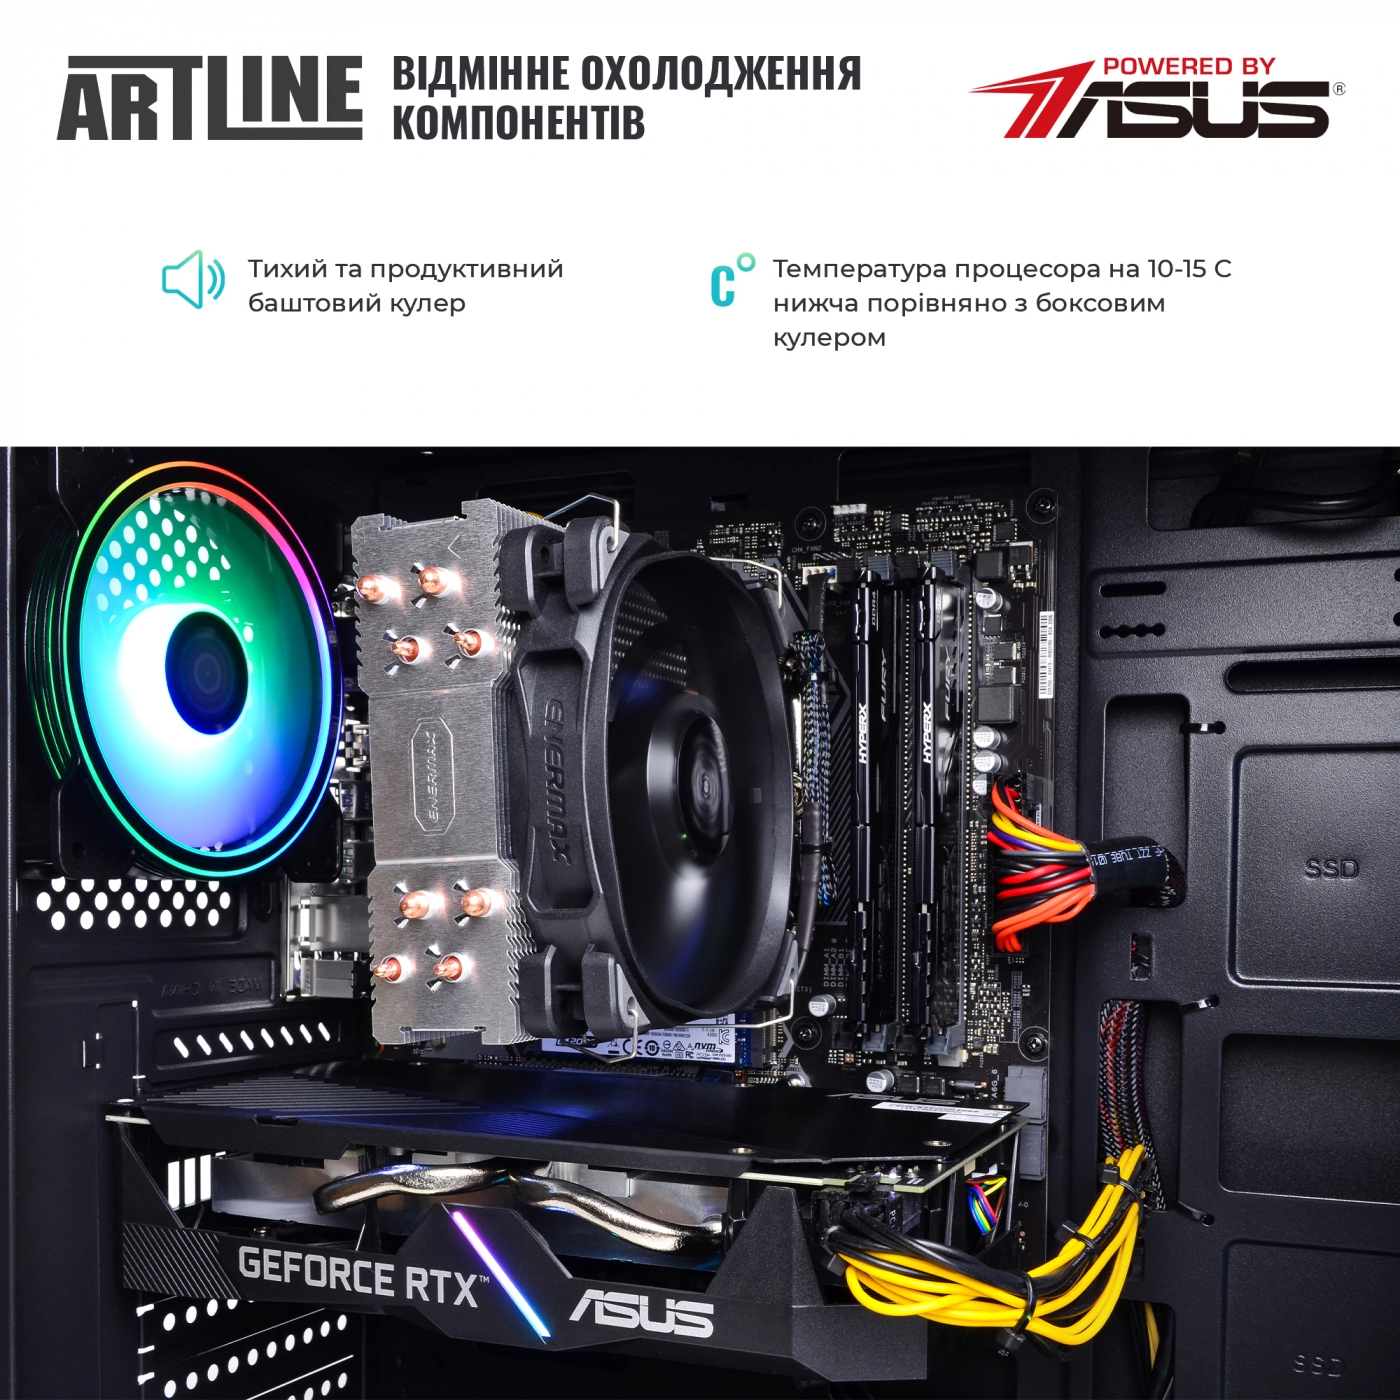 Купить Компьютер ARTLINE Gaming X55v28 - фото 4